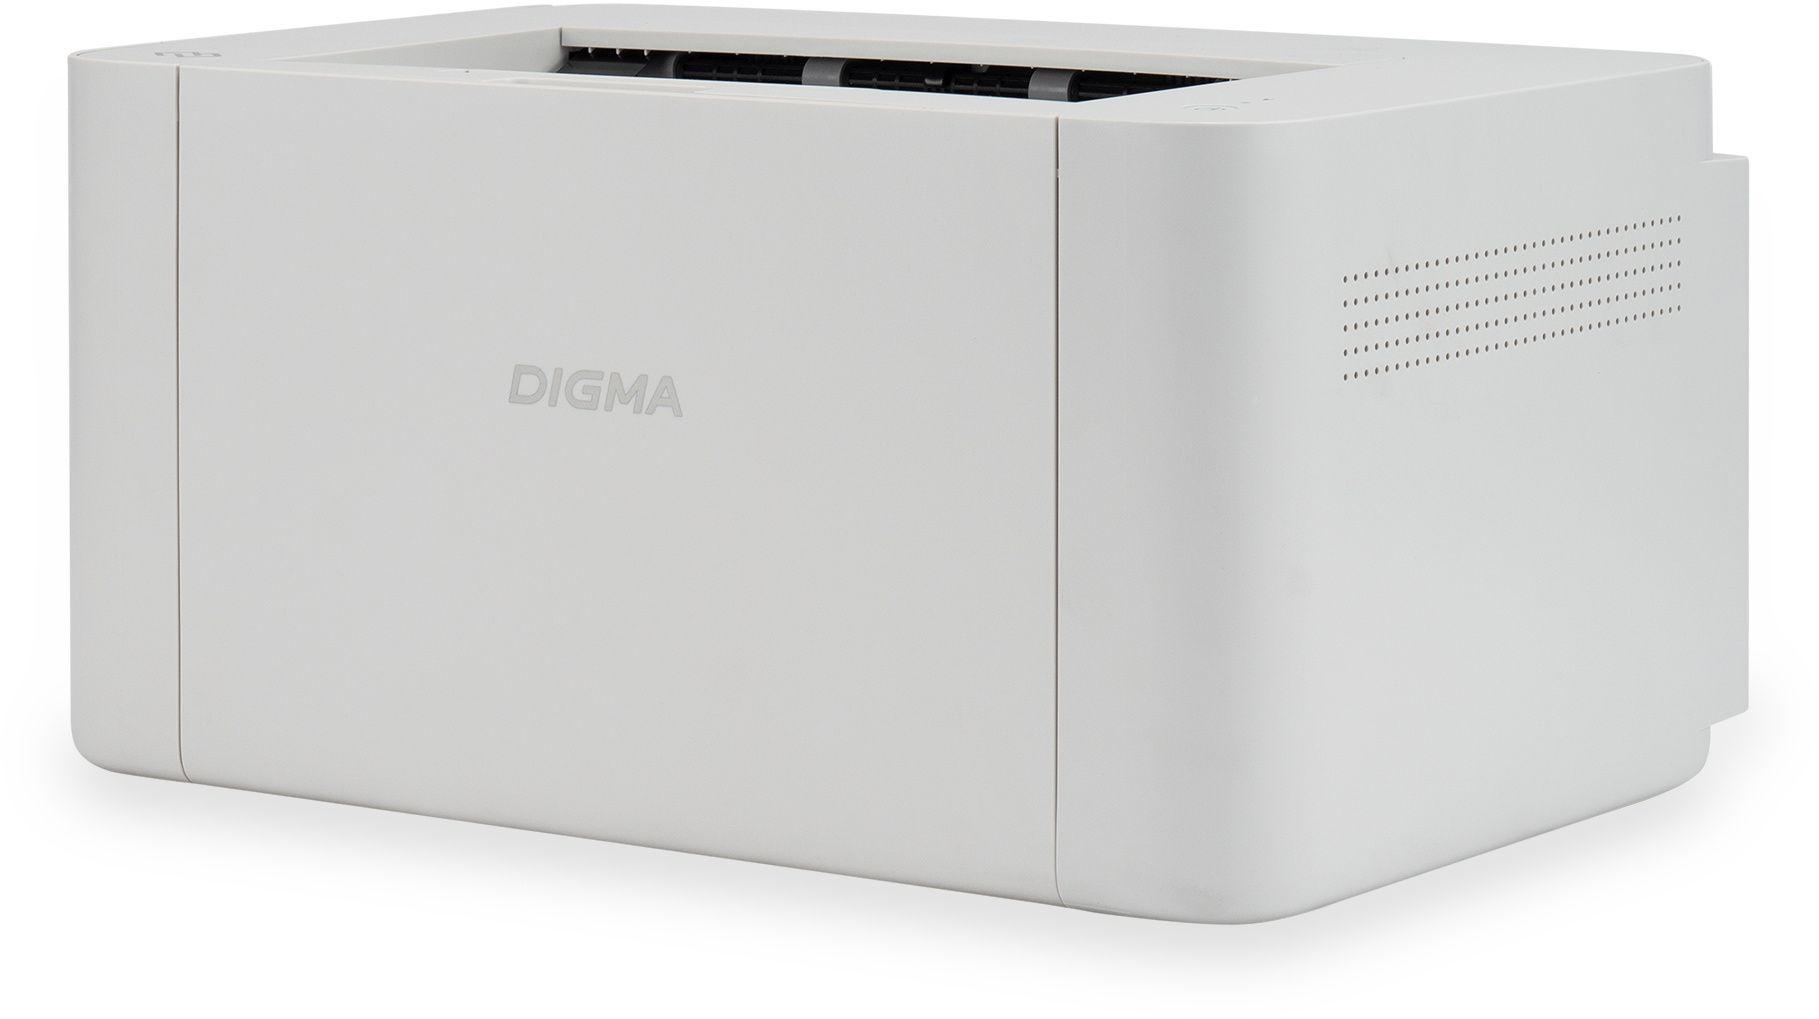 Принтер лазерный Digma DHP-2401 A4 серый цена и фото